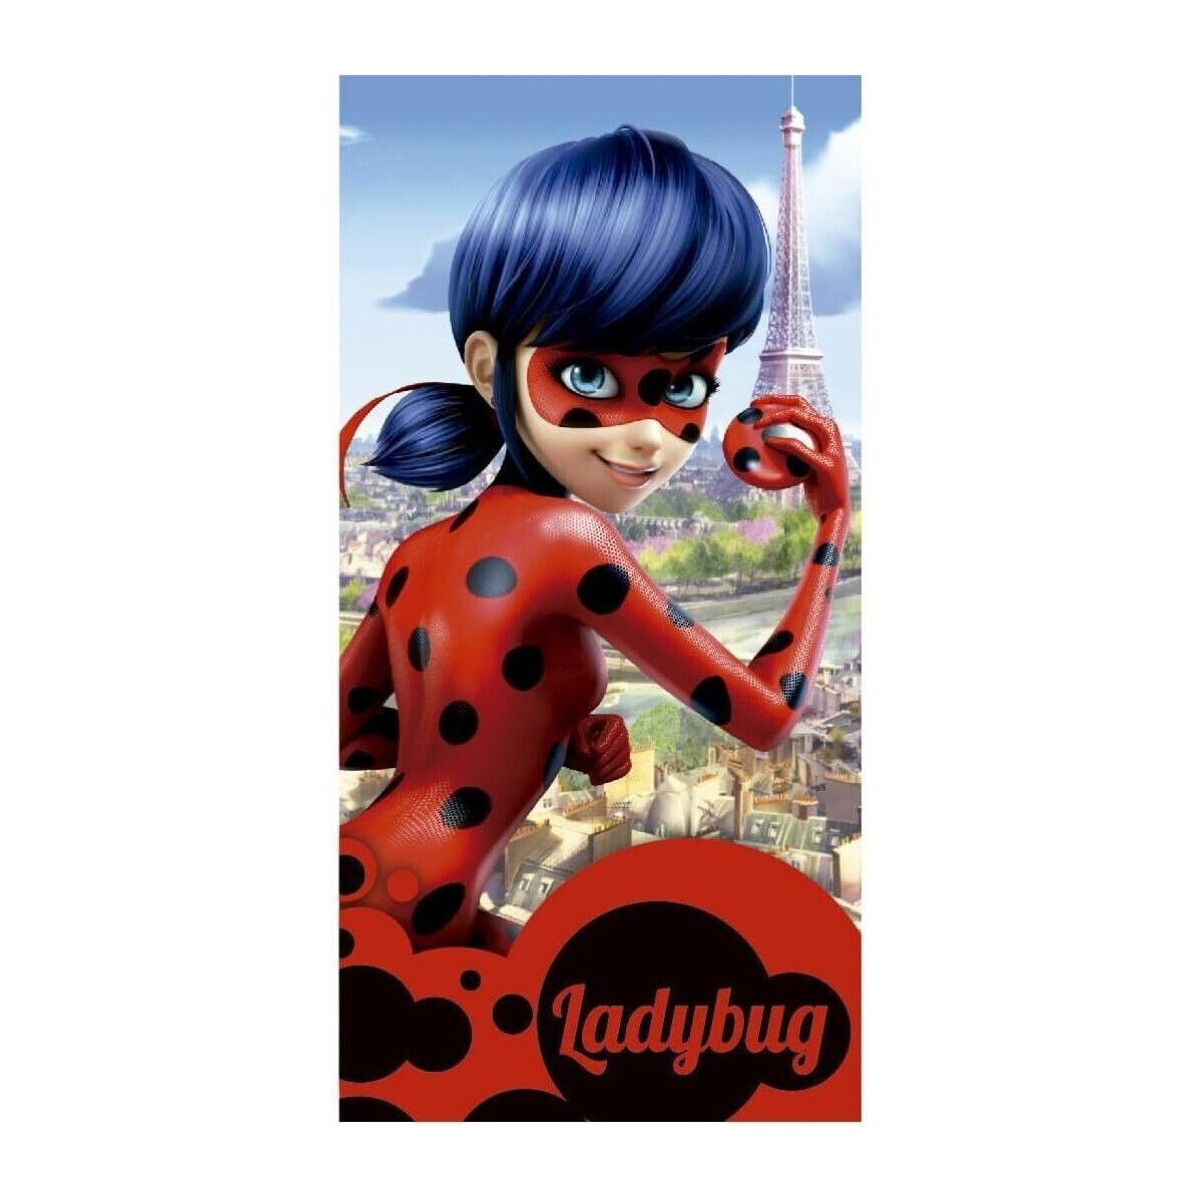 Casa Niña Toalla de playa Ladybug 2200002390 Multicolor